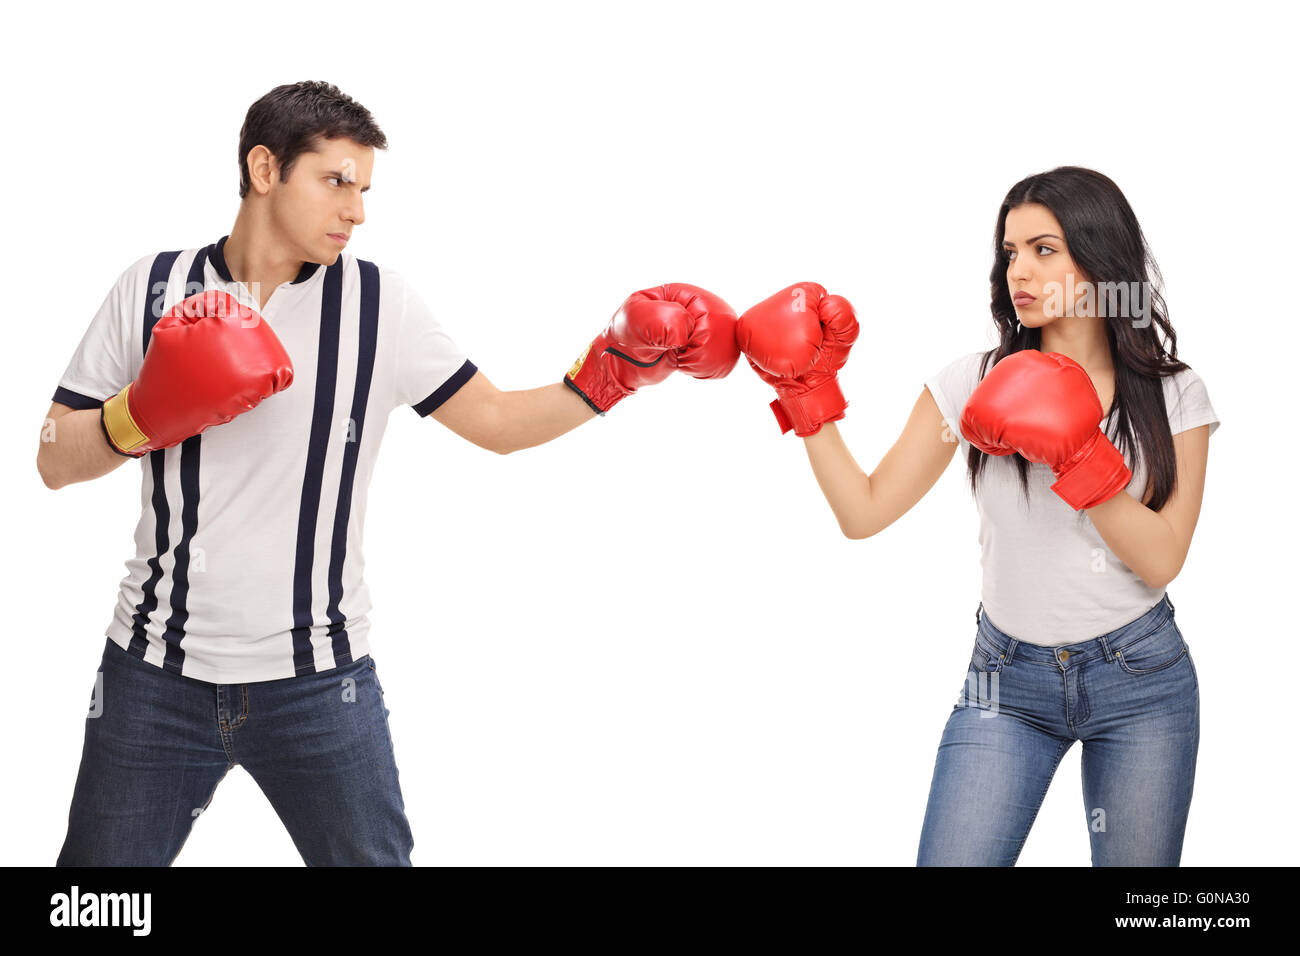 Бокс друг против друга. Мужчина и женщина в боксерских перчатках. Парни против девушек. Женщина в боксерских перчатках. Мужик в боксерских перчатках.